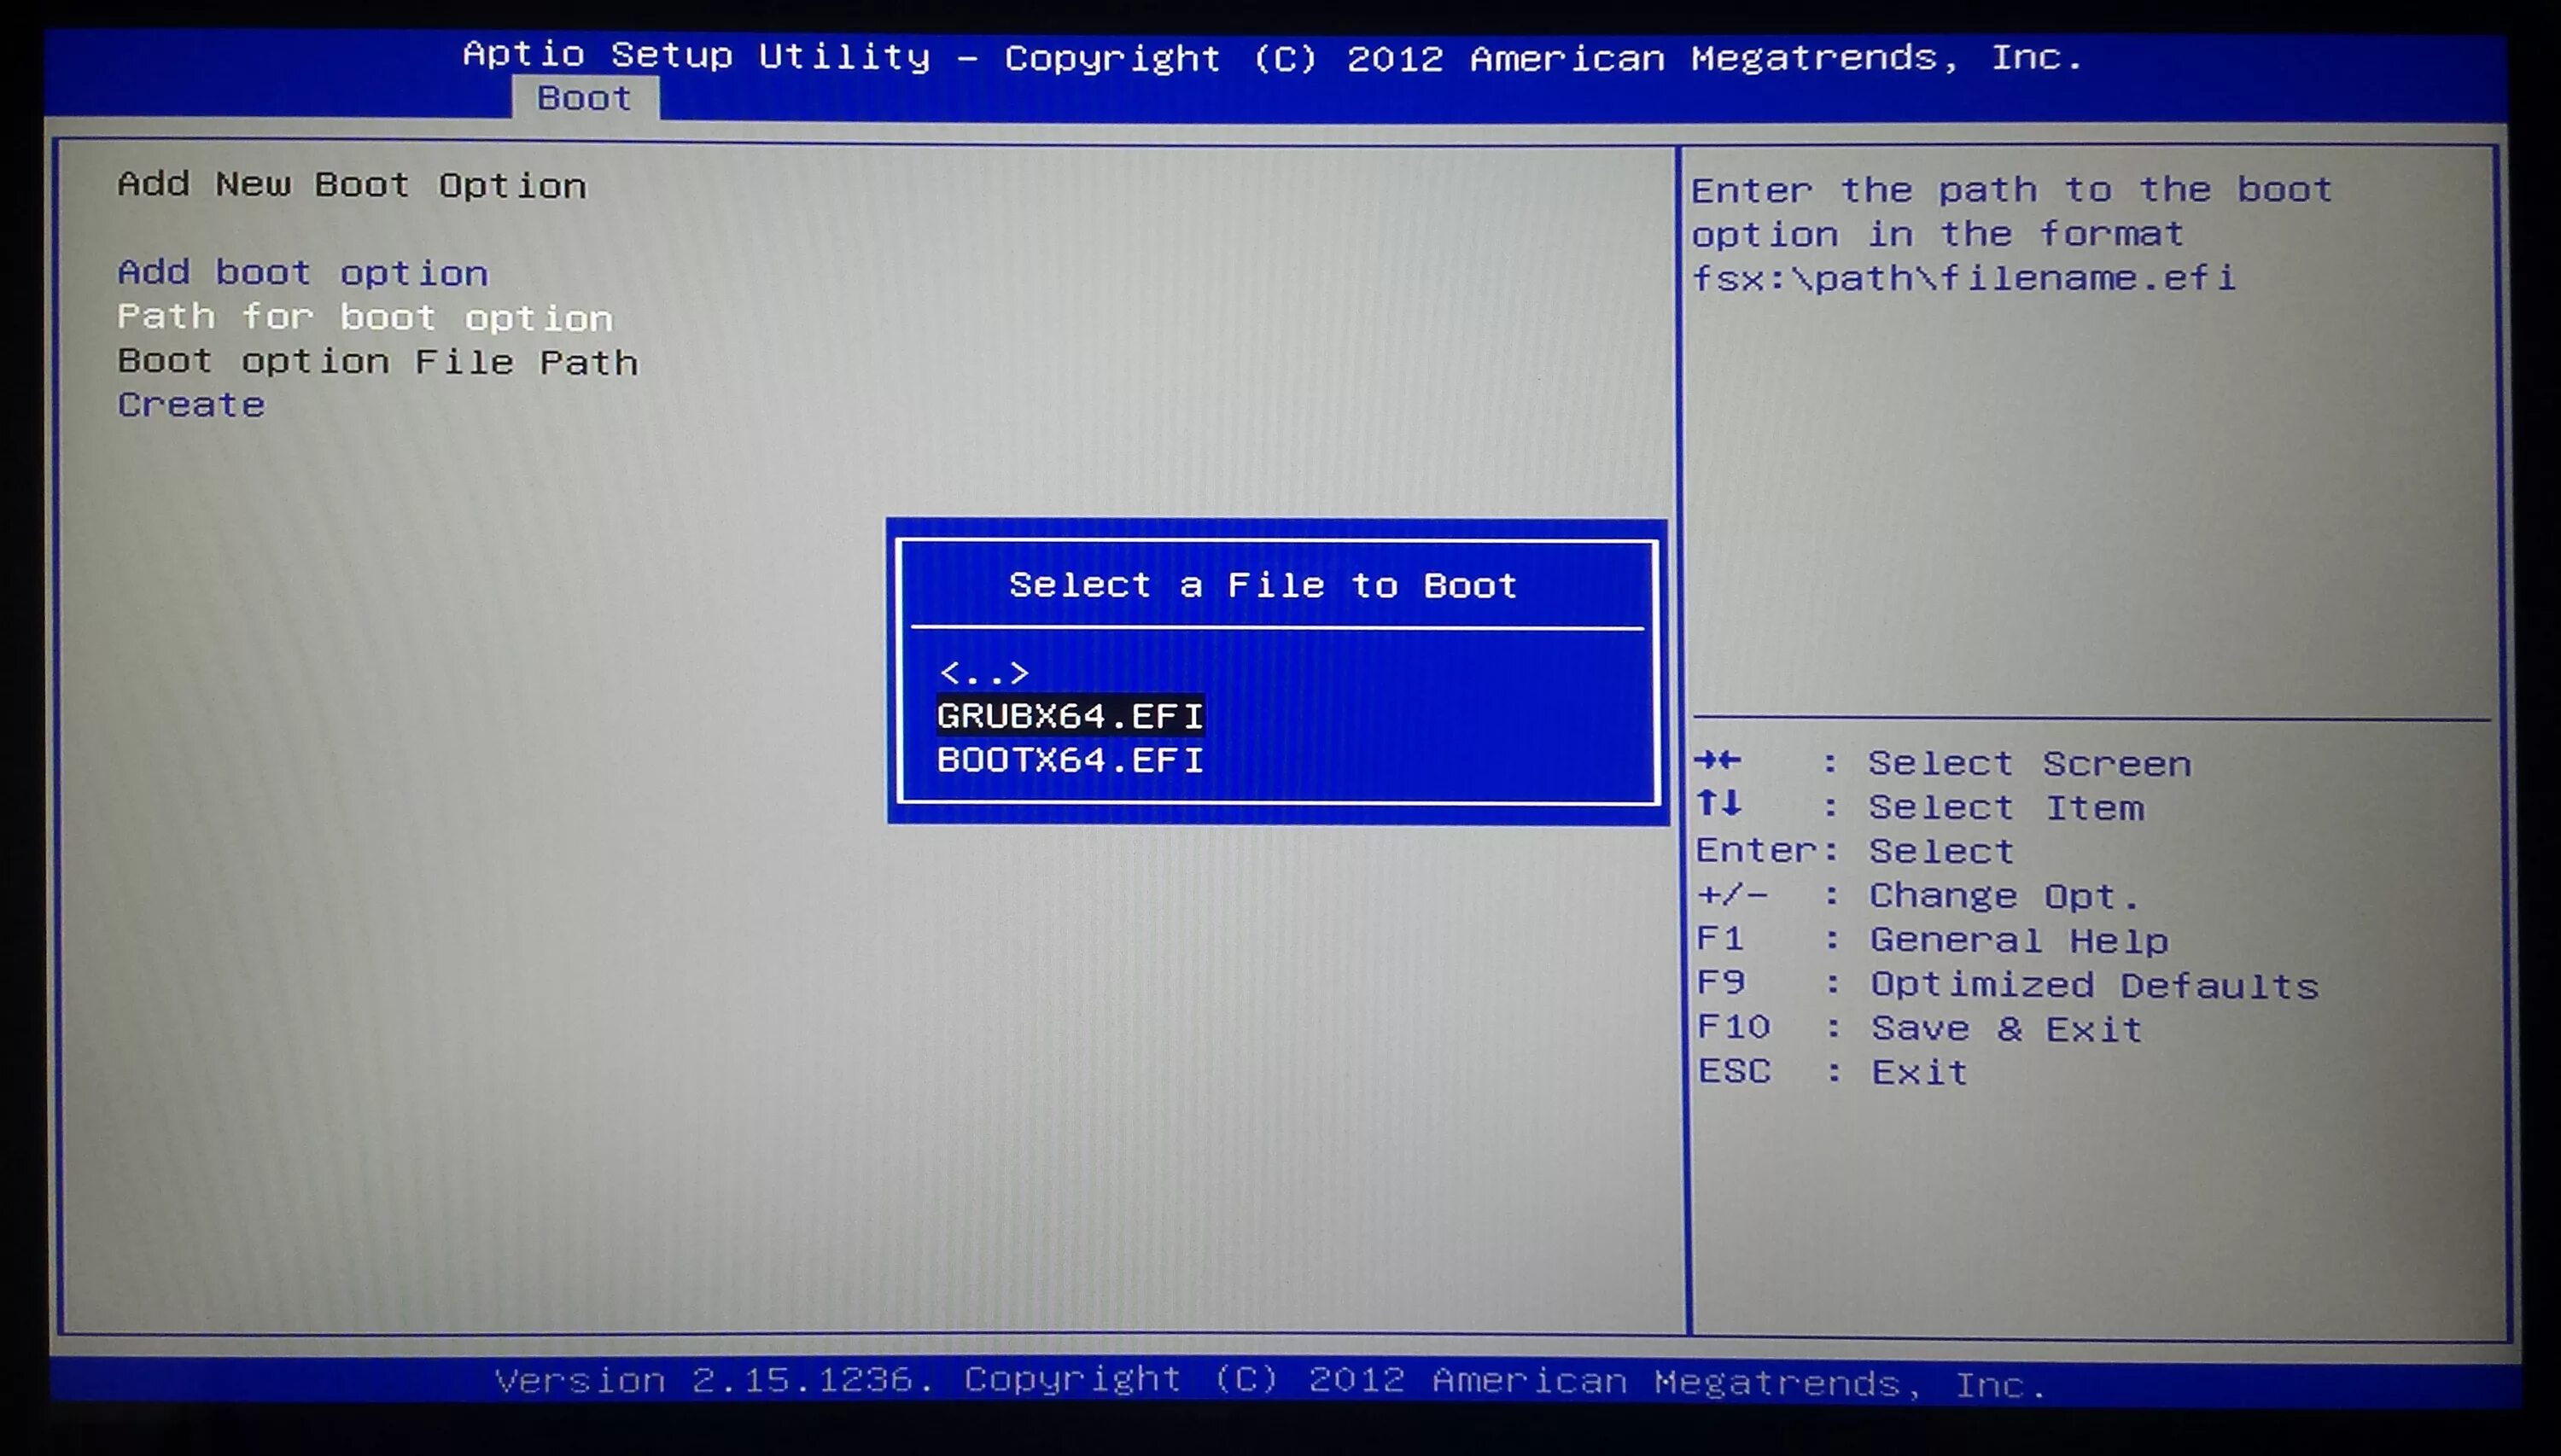 ASUS ноутбук BIOS Utility. BIOS ASUS ноутбук Boot. Boot menu ноутбук биос. Boot menu ASUS ноутбук. Ноутбук асус как войти в биос